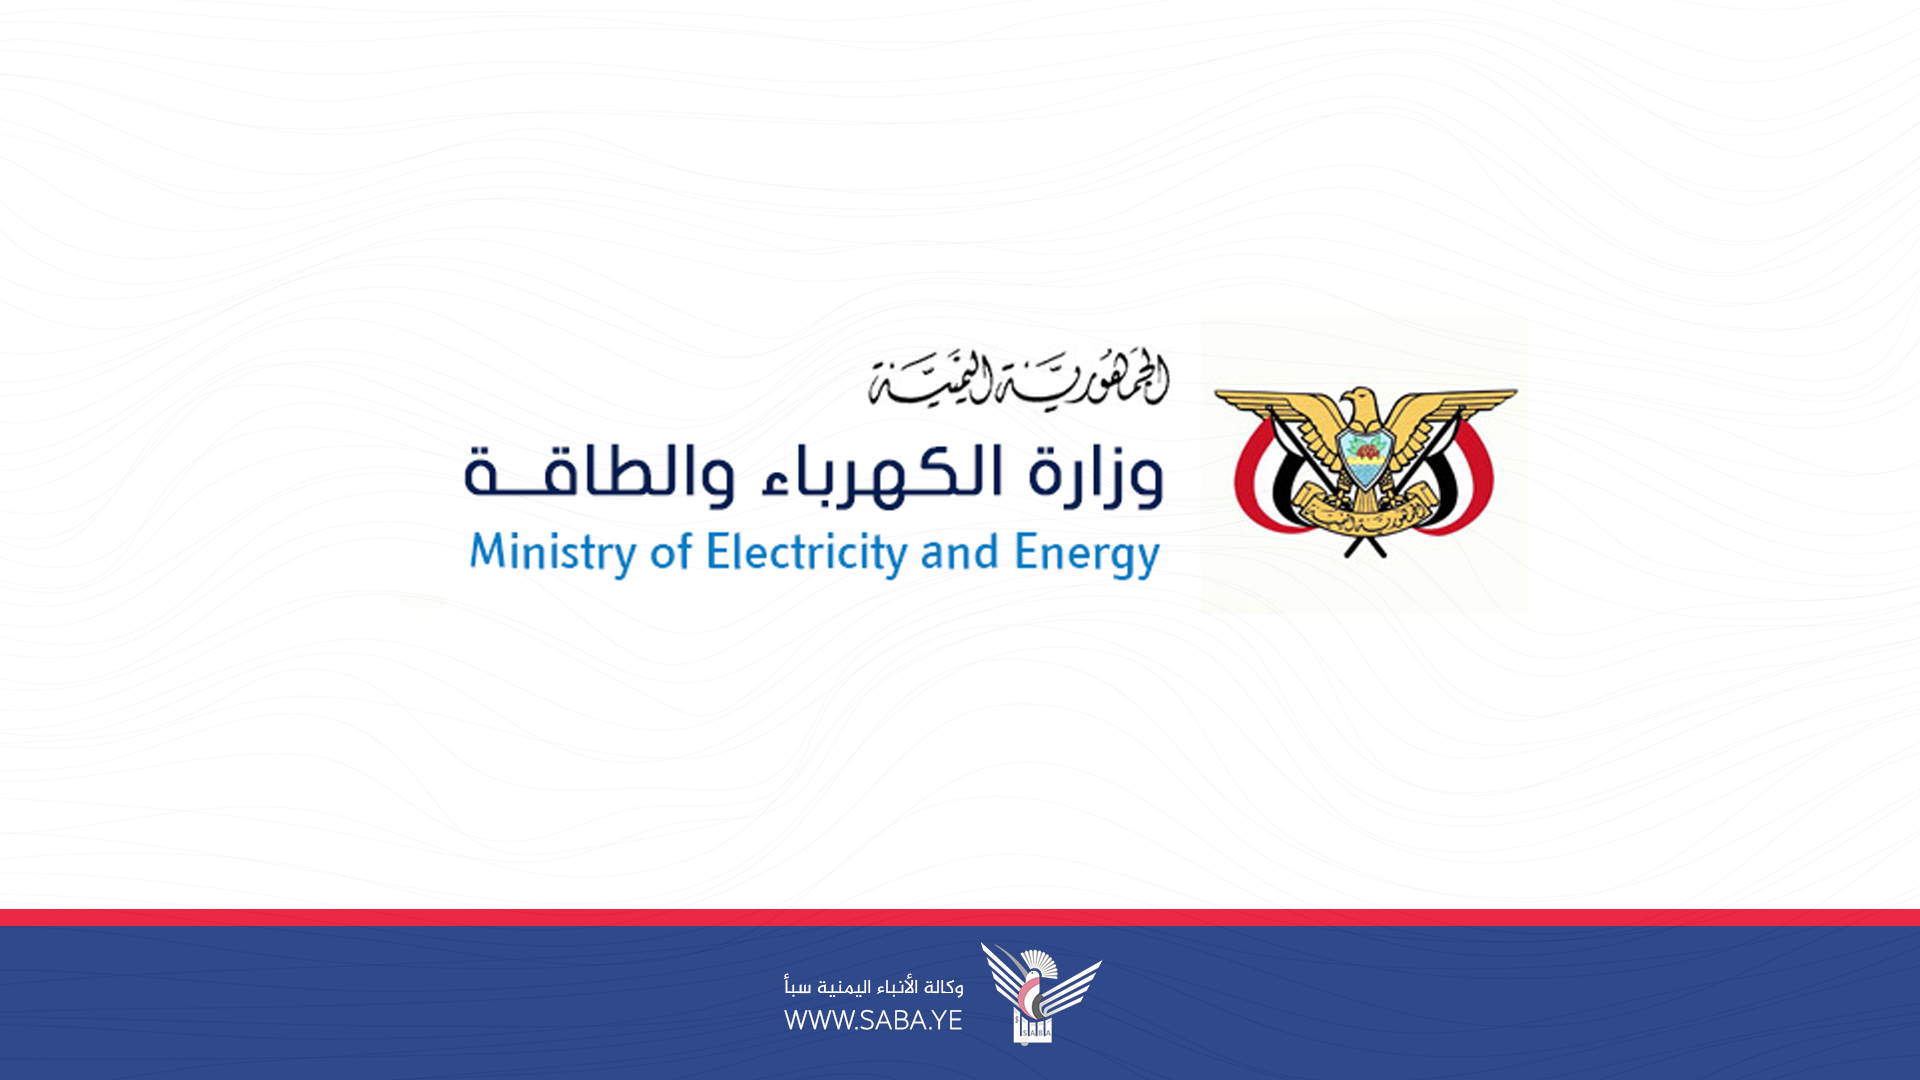 وزارة الكهرباء تحدد تعرفة سعر وحدة الطاقة الكهربائية التجارية بـ 257 ريال